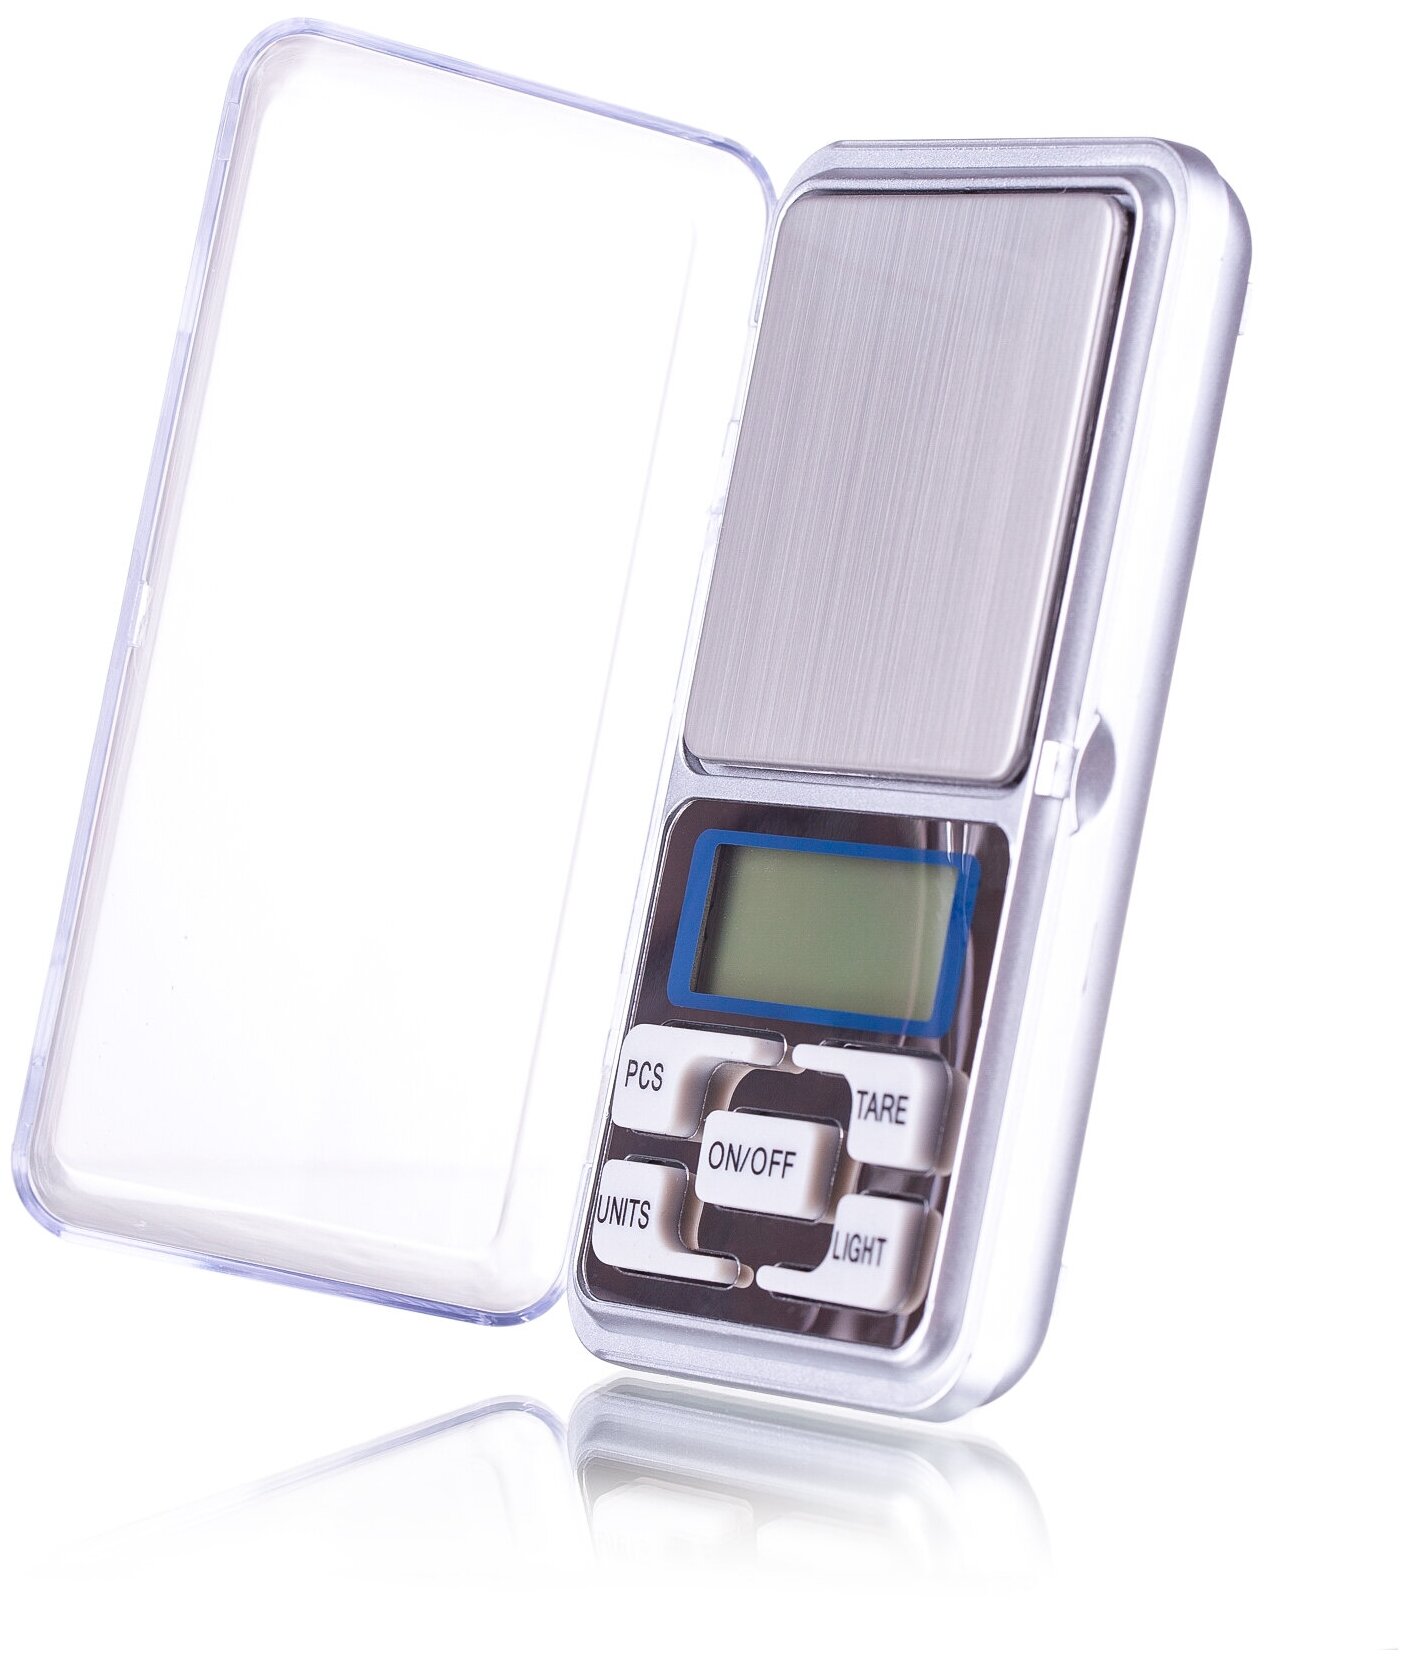 Pocket Scale - электронные весы с точностью до 0,01 грамма